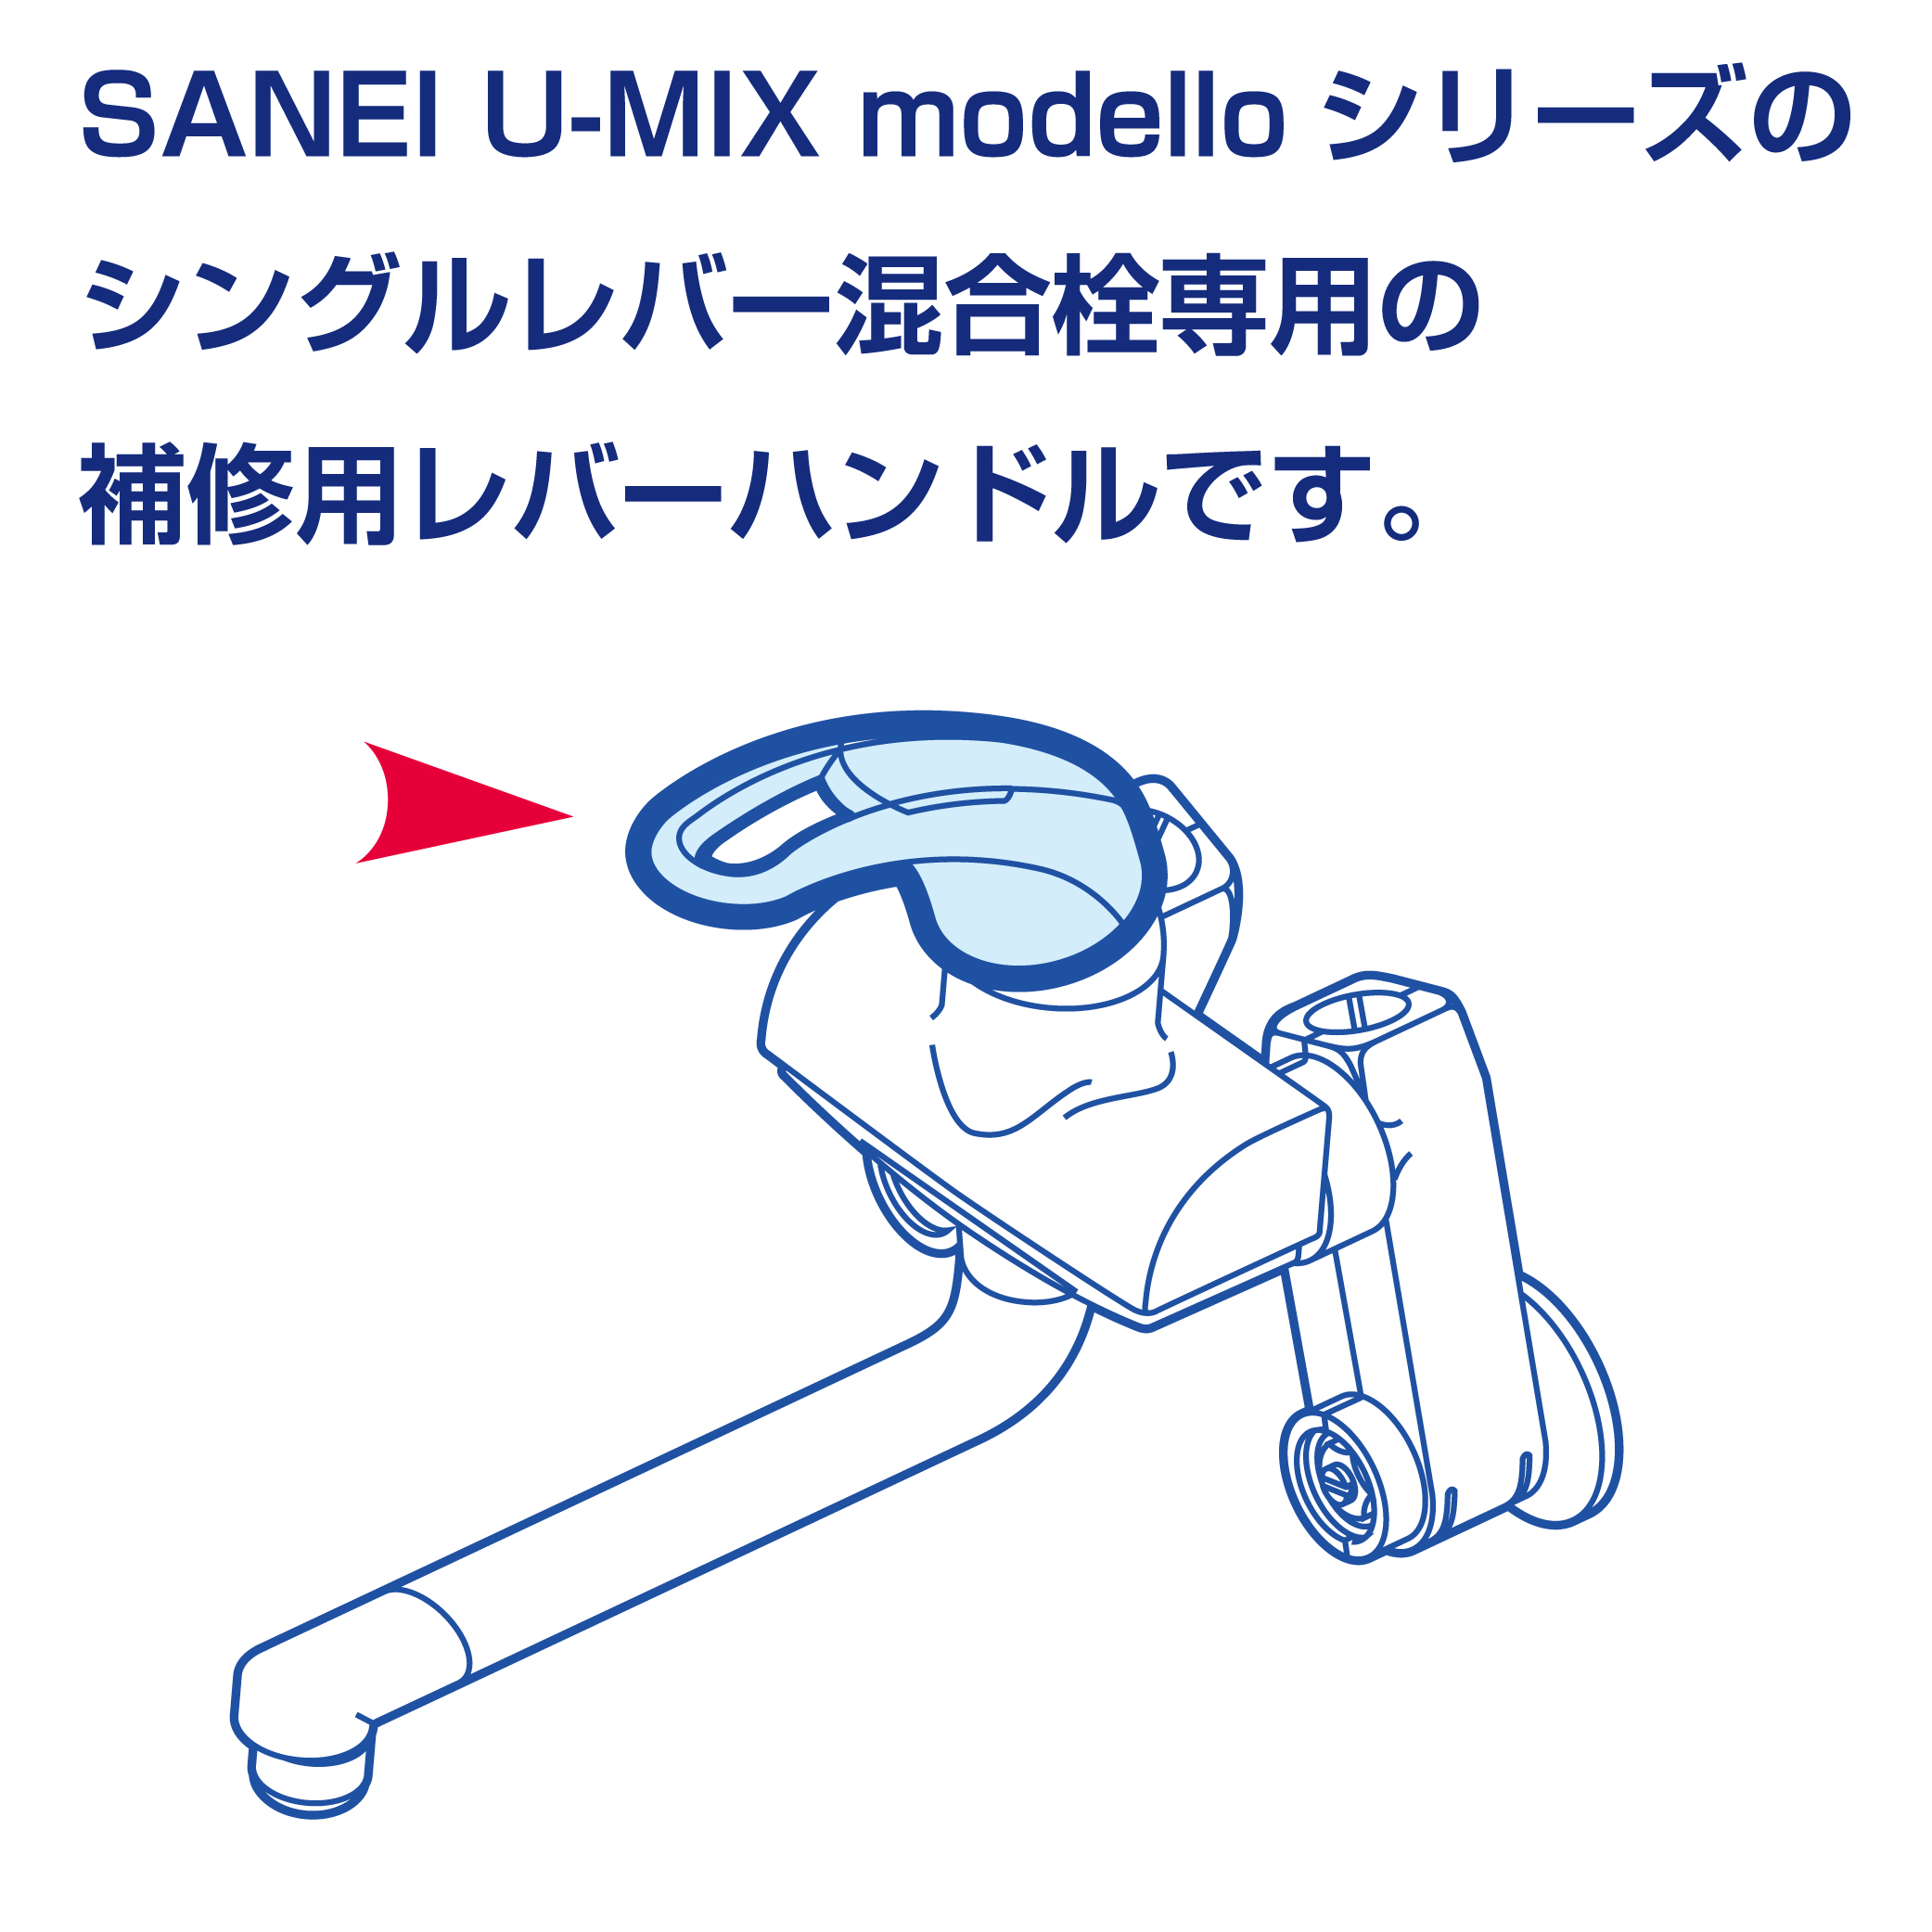 SANEI U-MIX modelloシリーズ戦闘のレバーハンドル